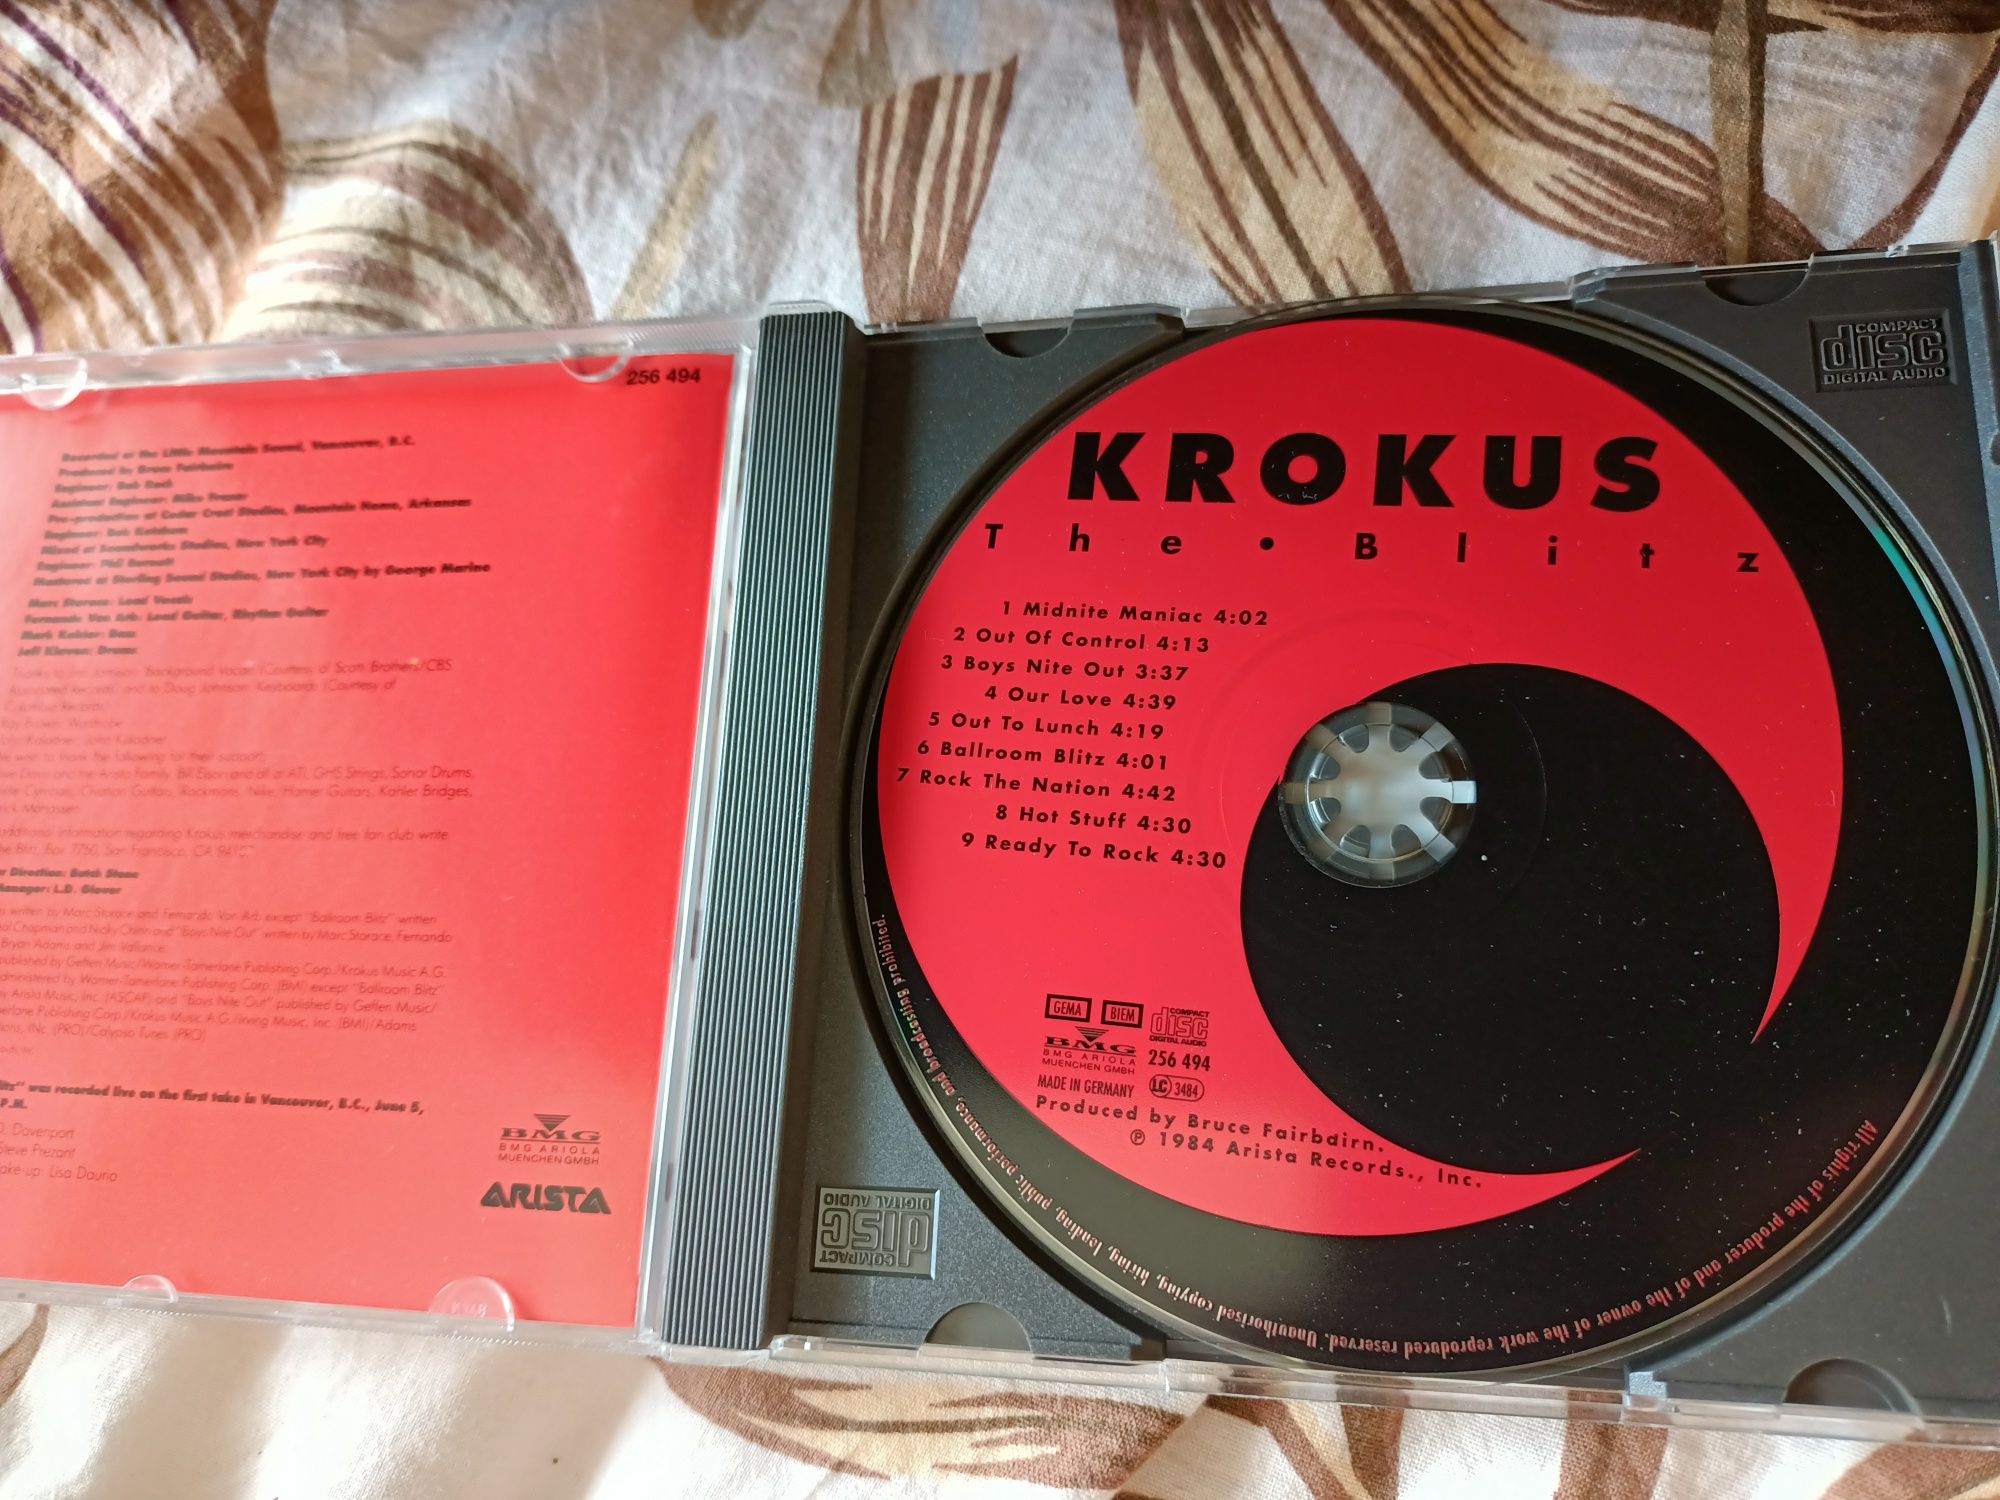 Krokus - The Blitz (nm)